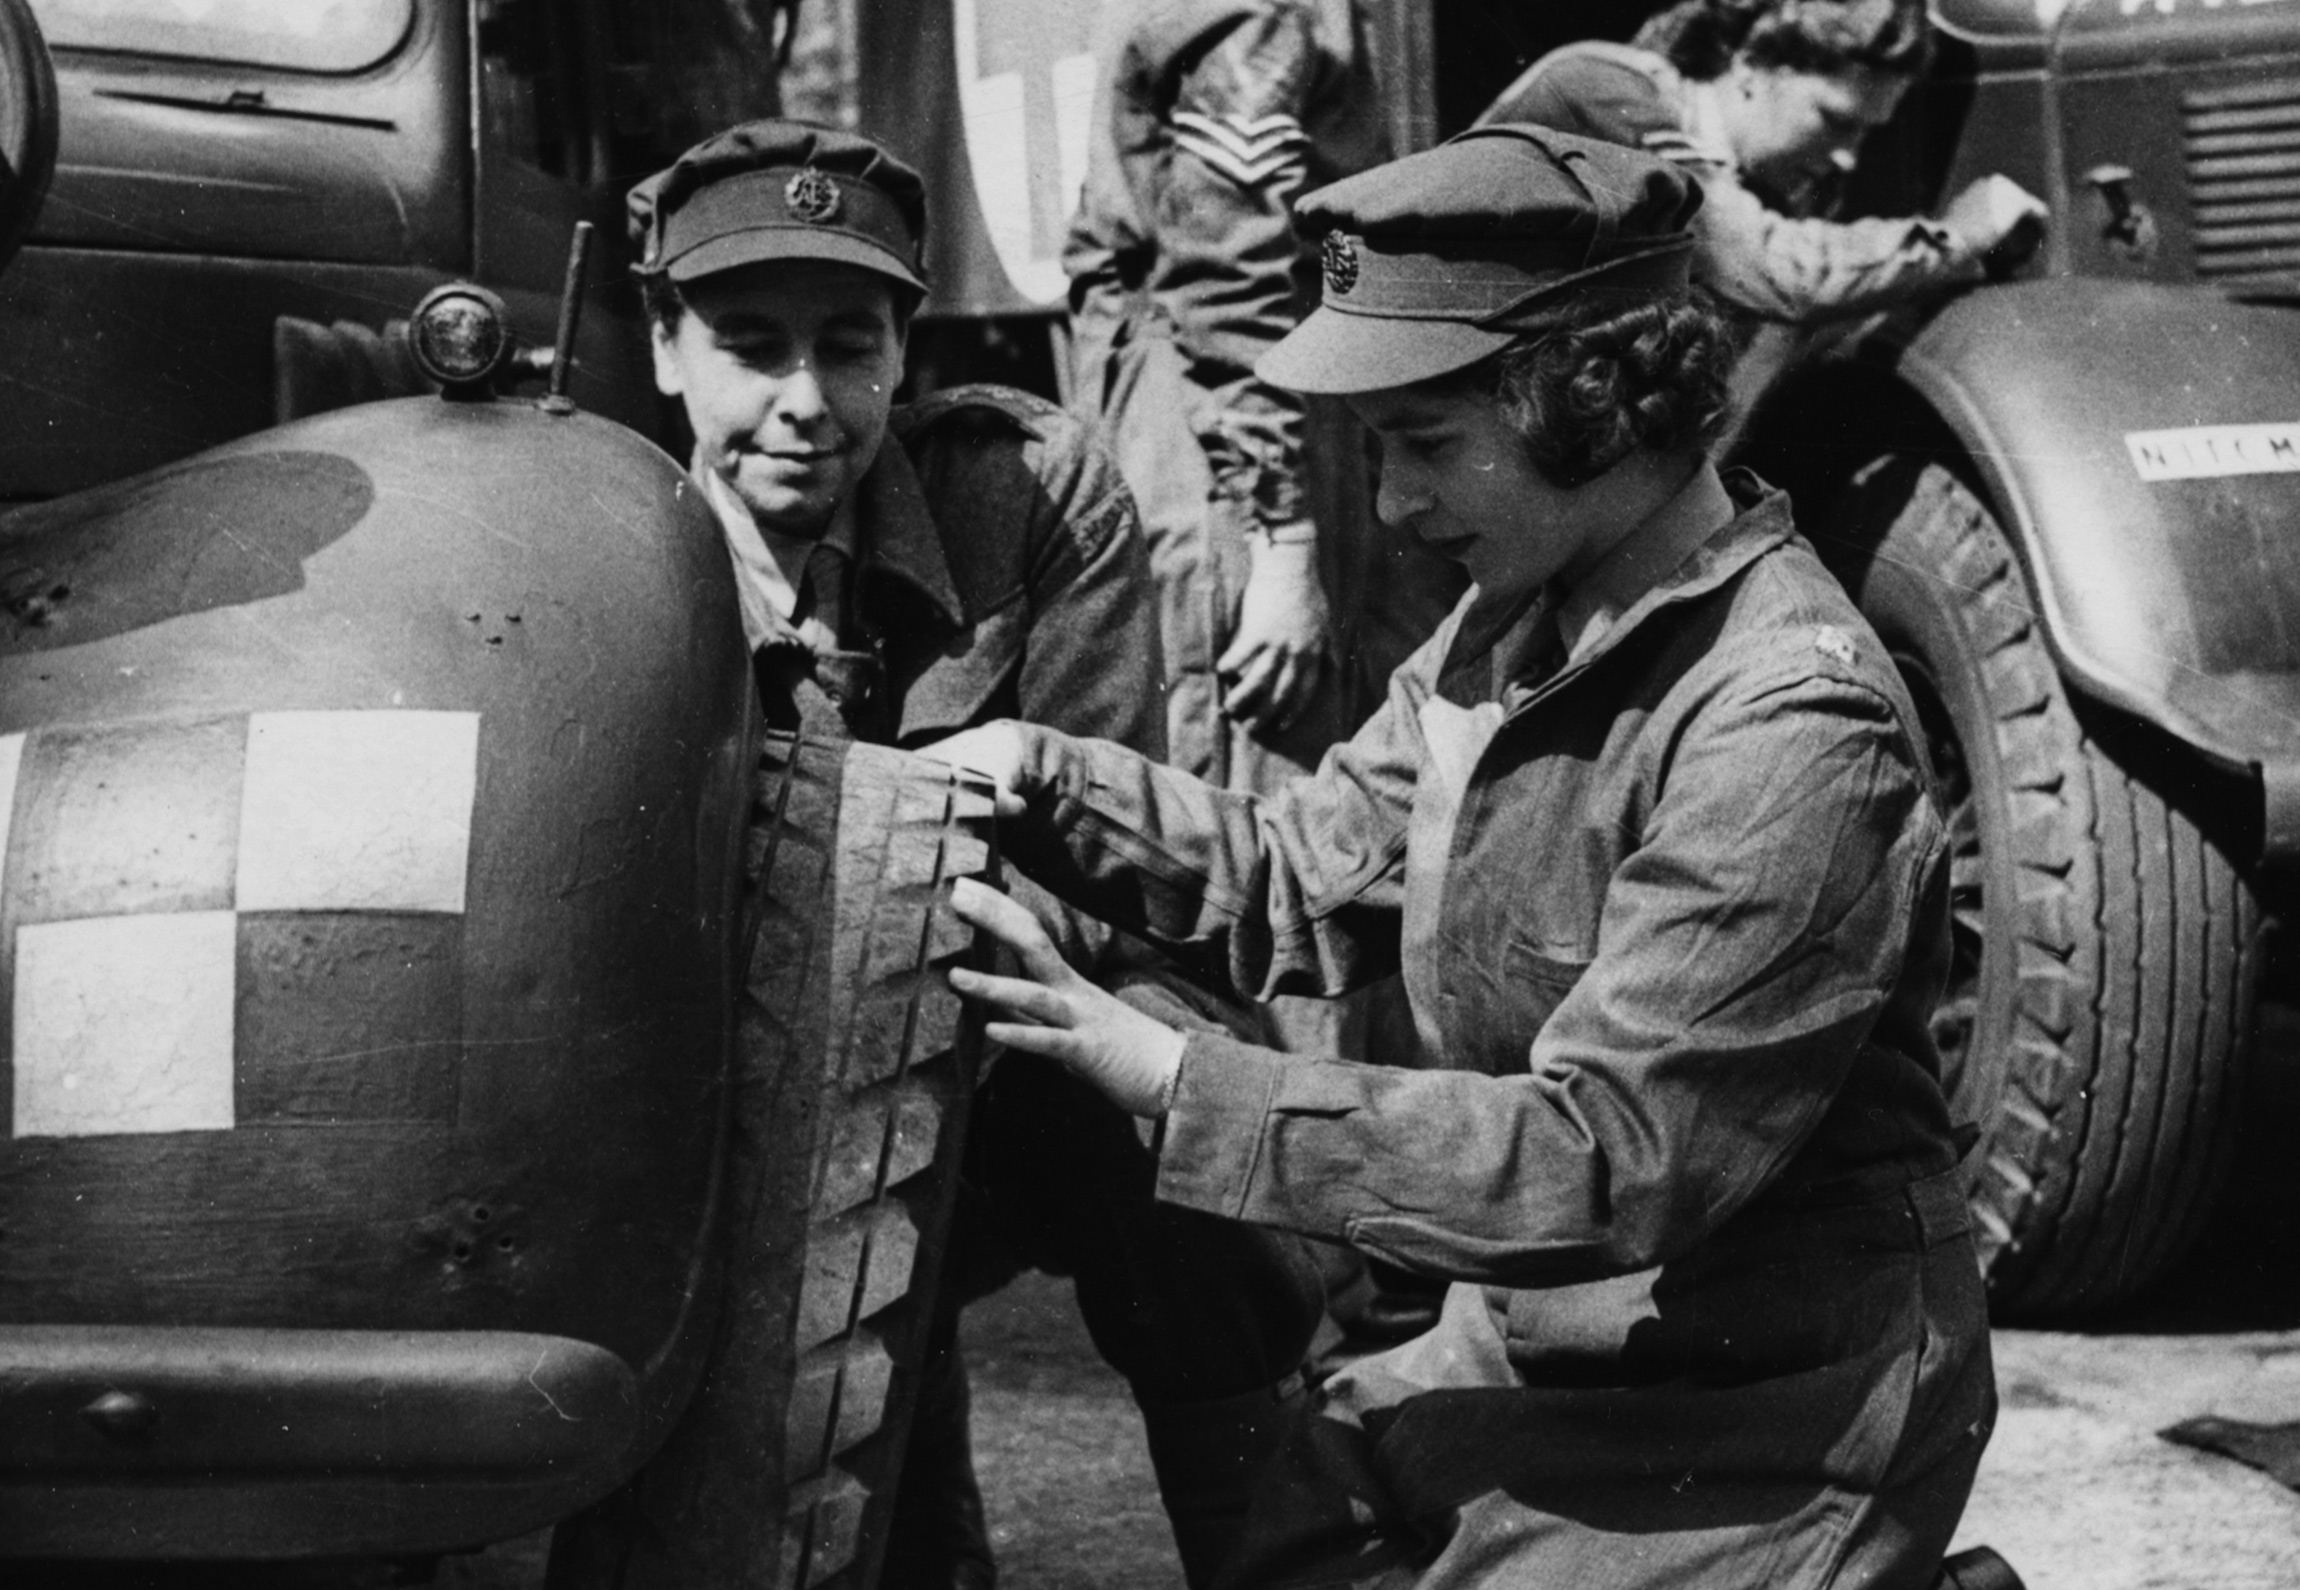 Принцесса Елизавета меняет шину в ходе военной подготовки, 18 апреля 1945 года.

Во время Второй мировой войны будущая королева настояла, что пойдет учиться на механика-водителя